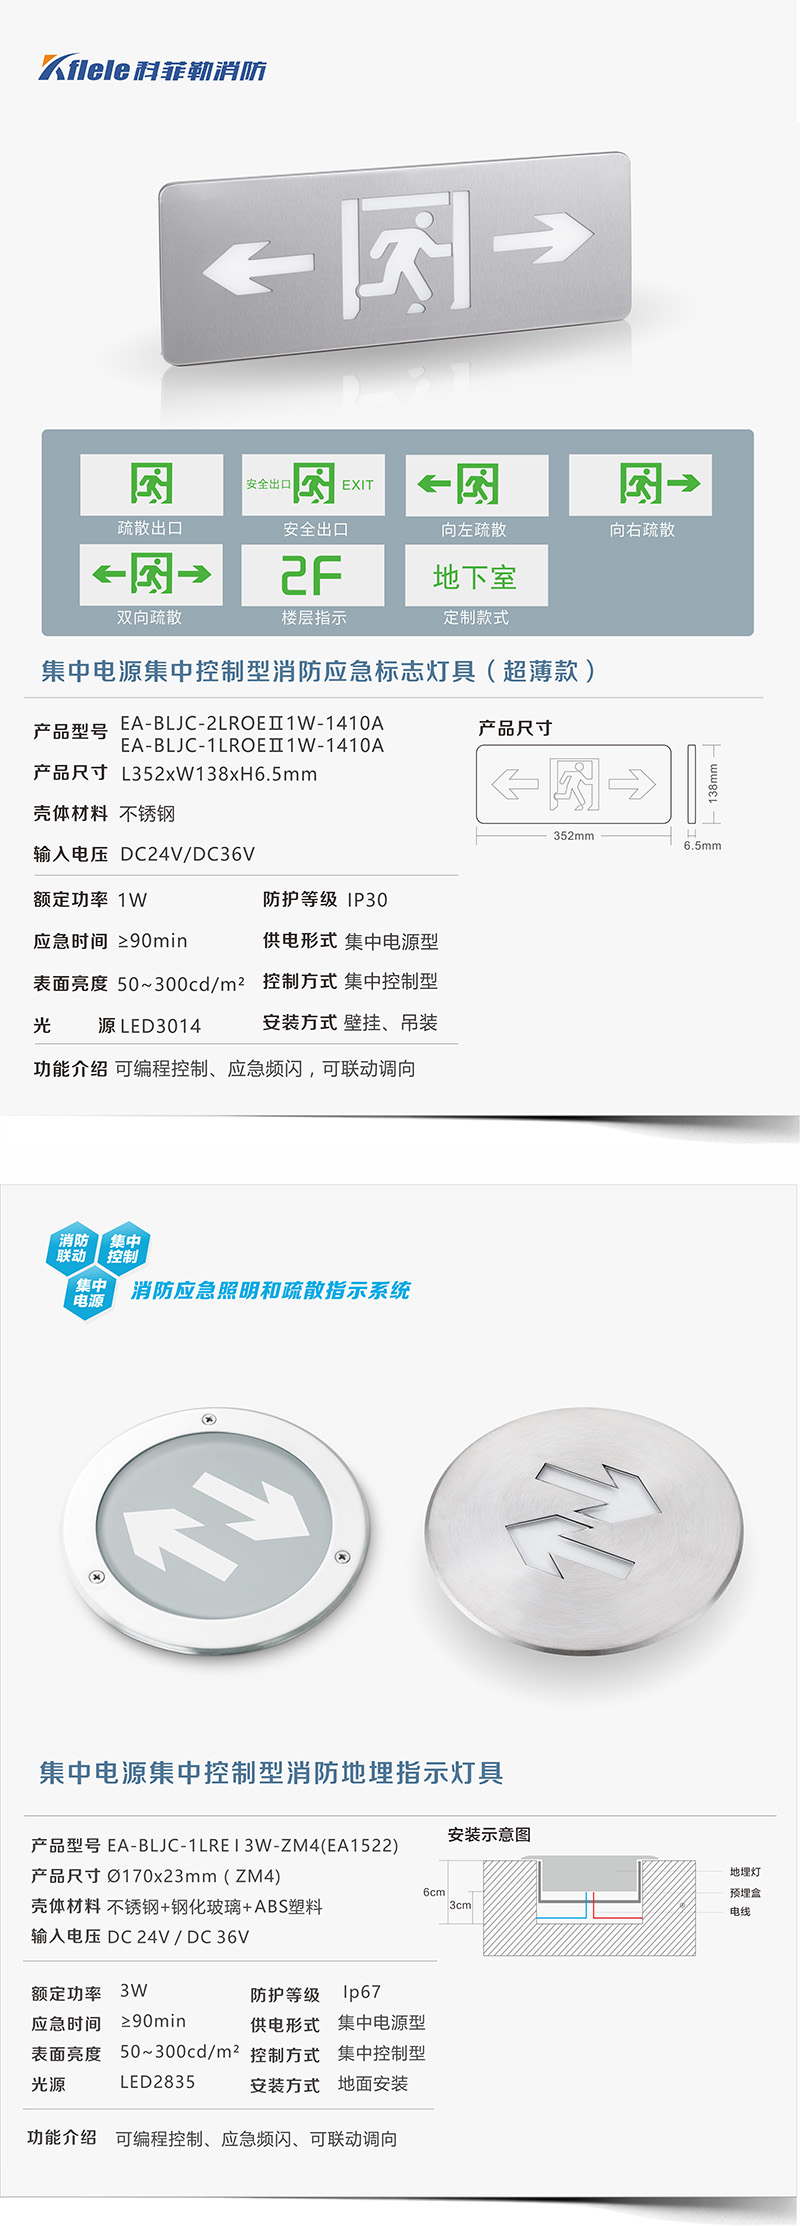 武汉1KW应急照明集中电源品牌